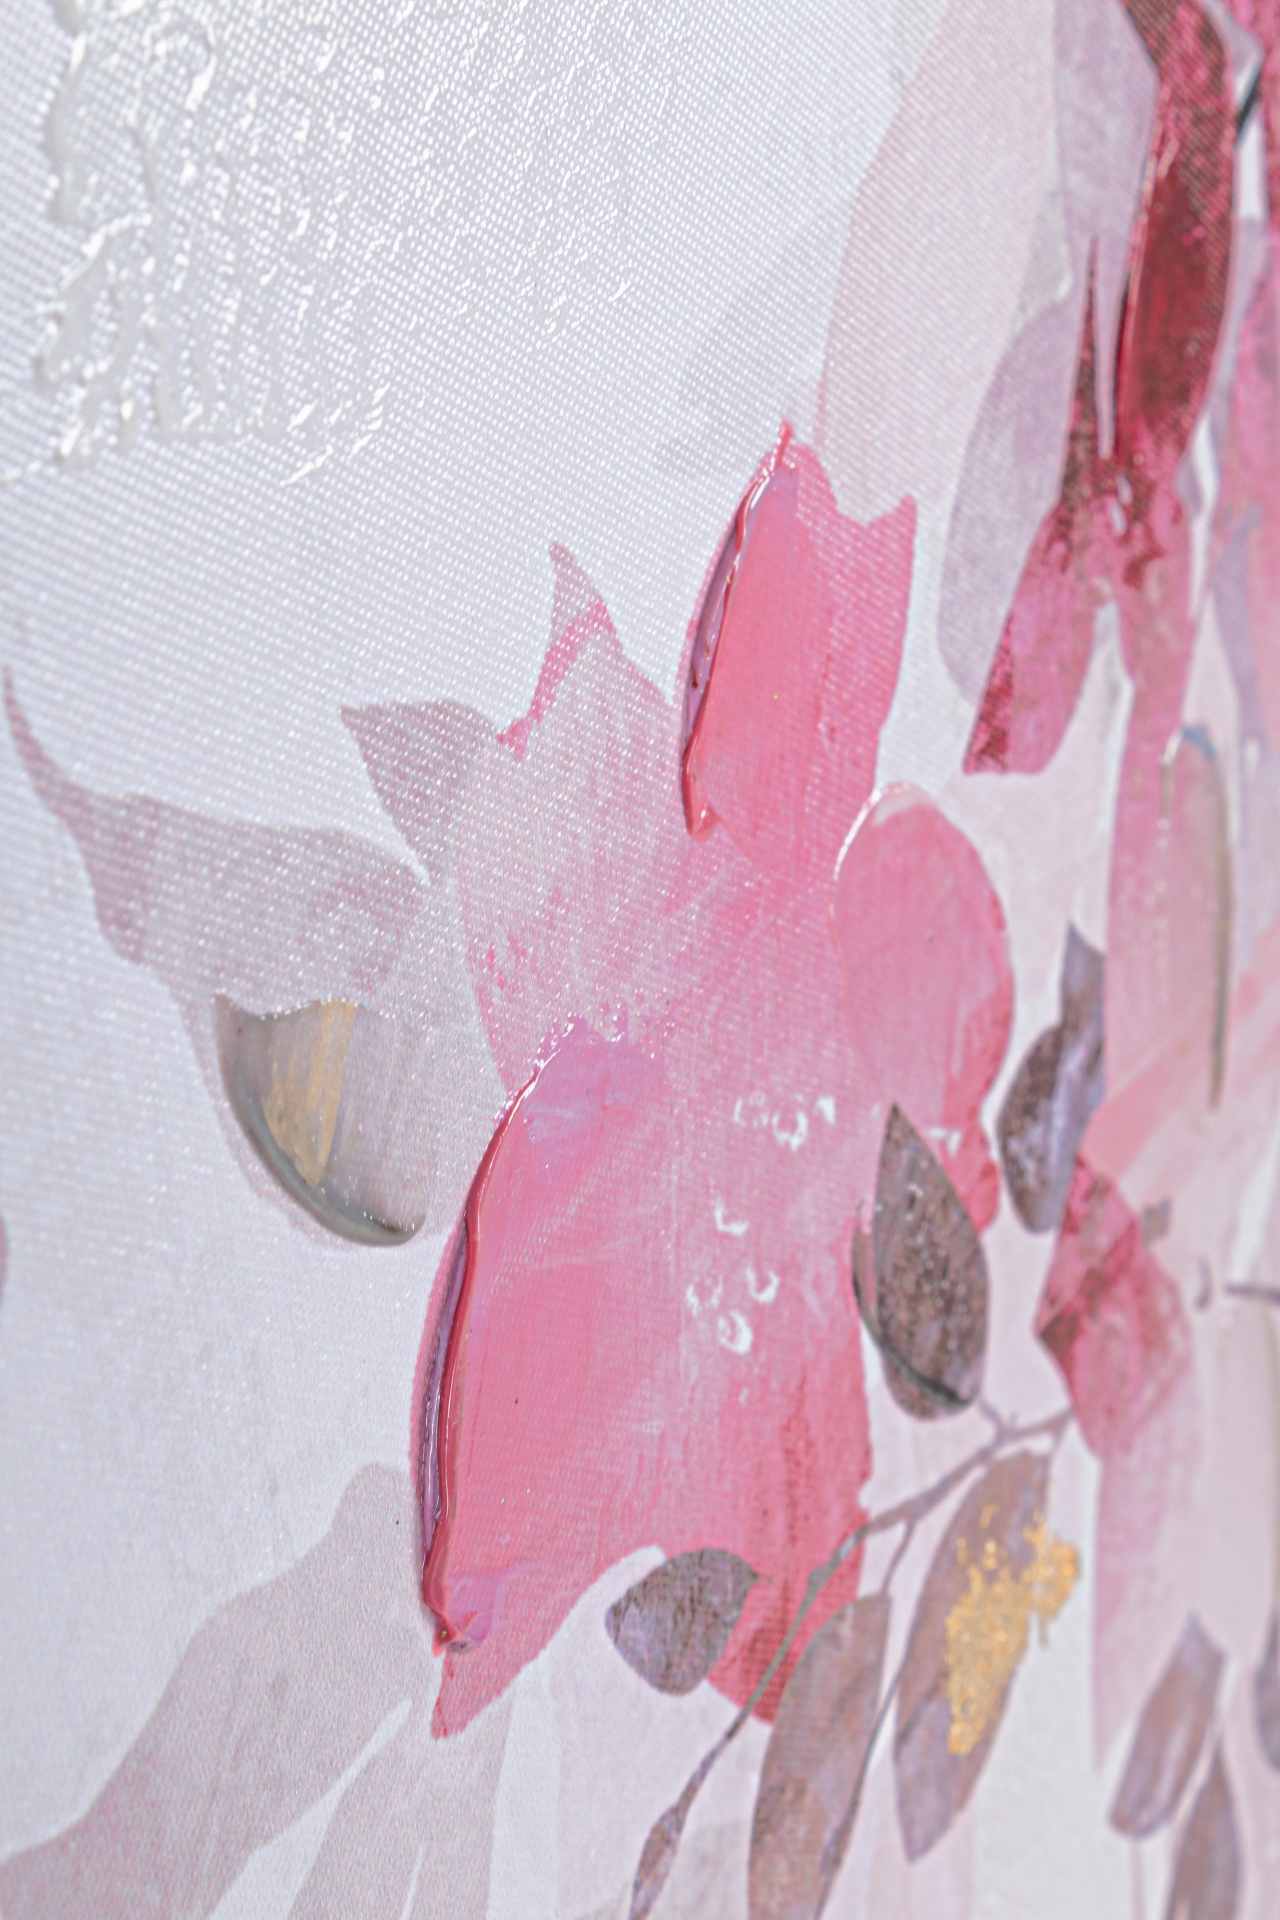 Das Ölbild Pink Flower No.2 überzeugt mit ihrem klassischen Design. Das Bild verfügt über einen Druck auf Leinwand. Das Gestell ist aus Tannenholz und der Rahmen aus Kunststoff. Die Maße sind 122x82 cm.